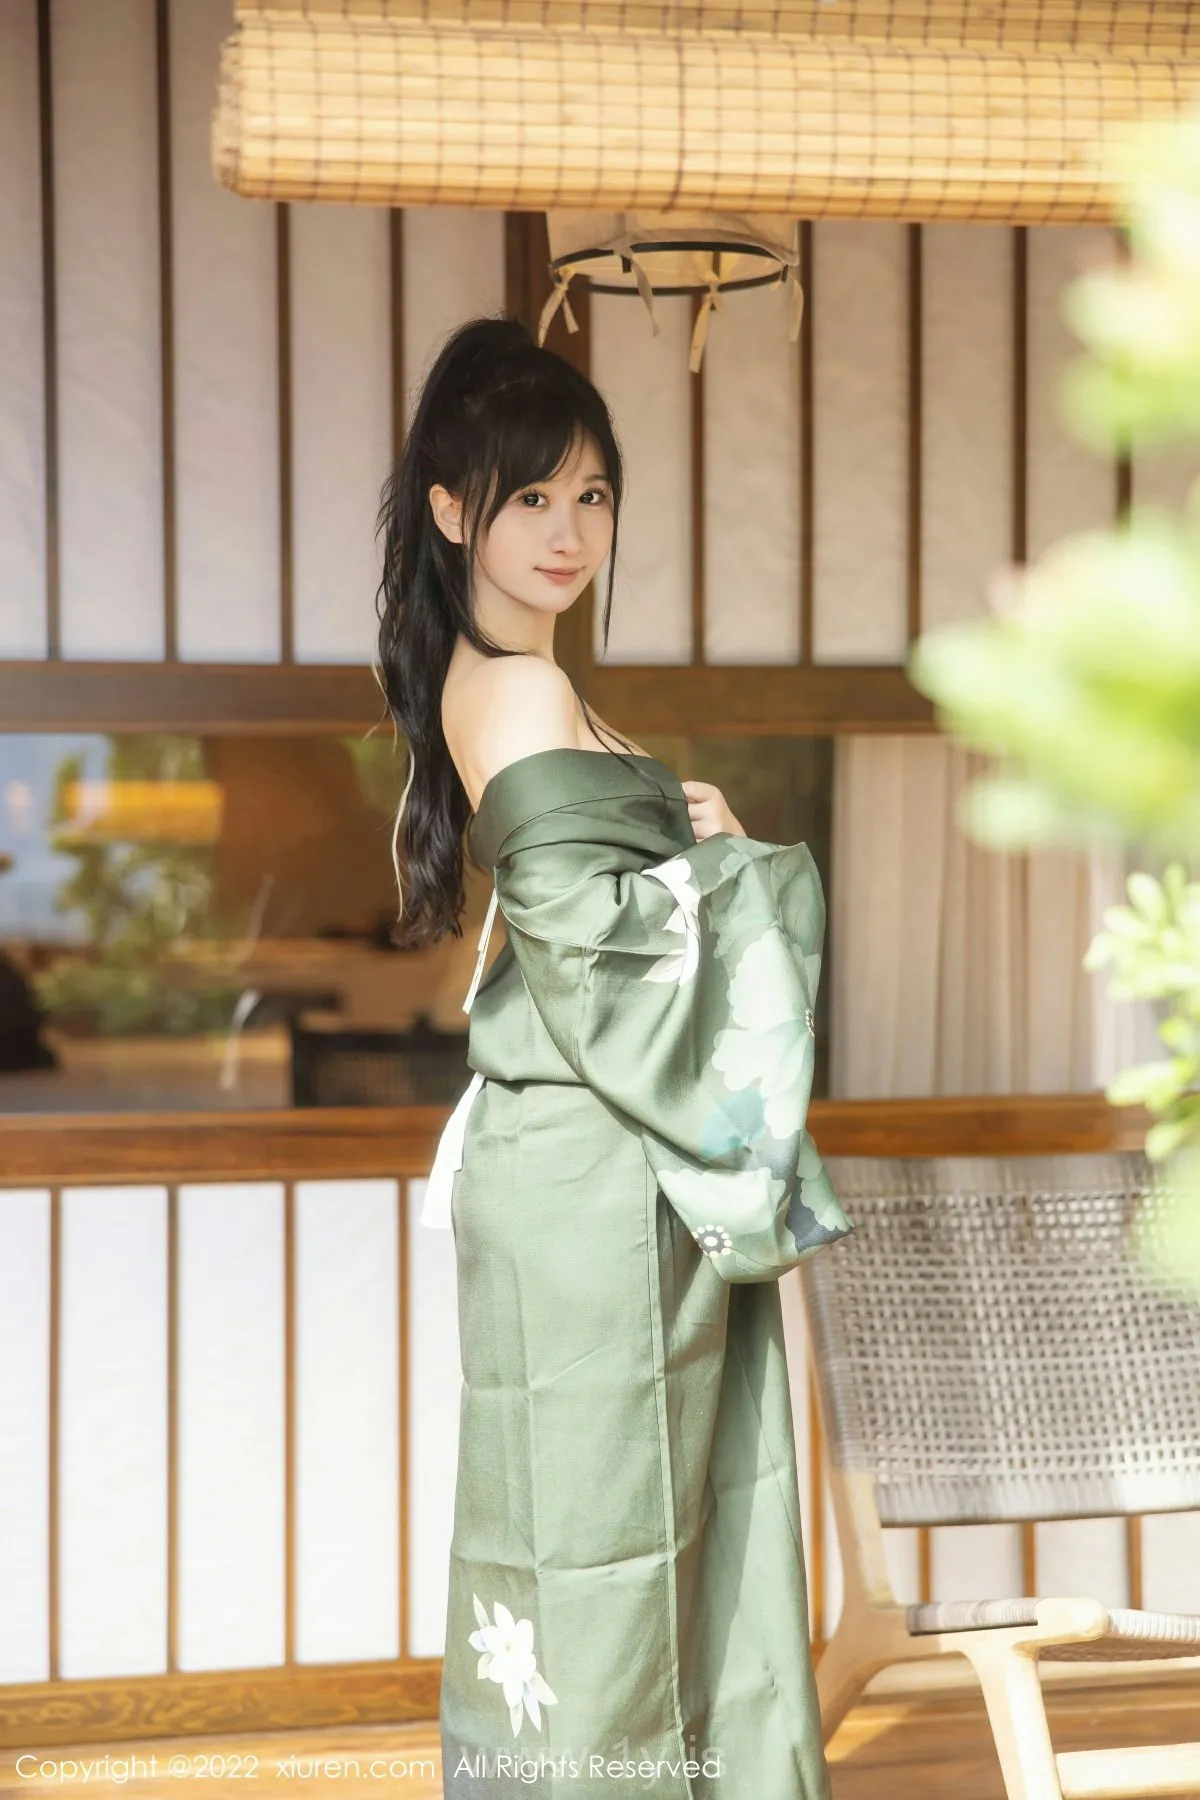 XIUREN(秀人网) NO.5256 Elegant & Breathtaking Asian Cutie 小果冻儿